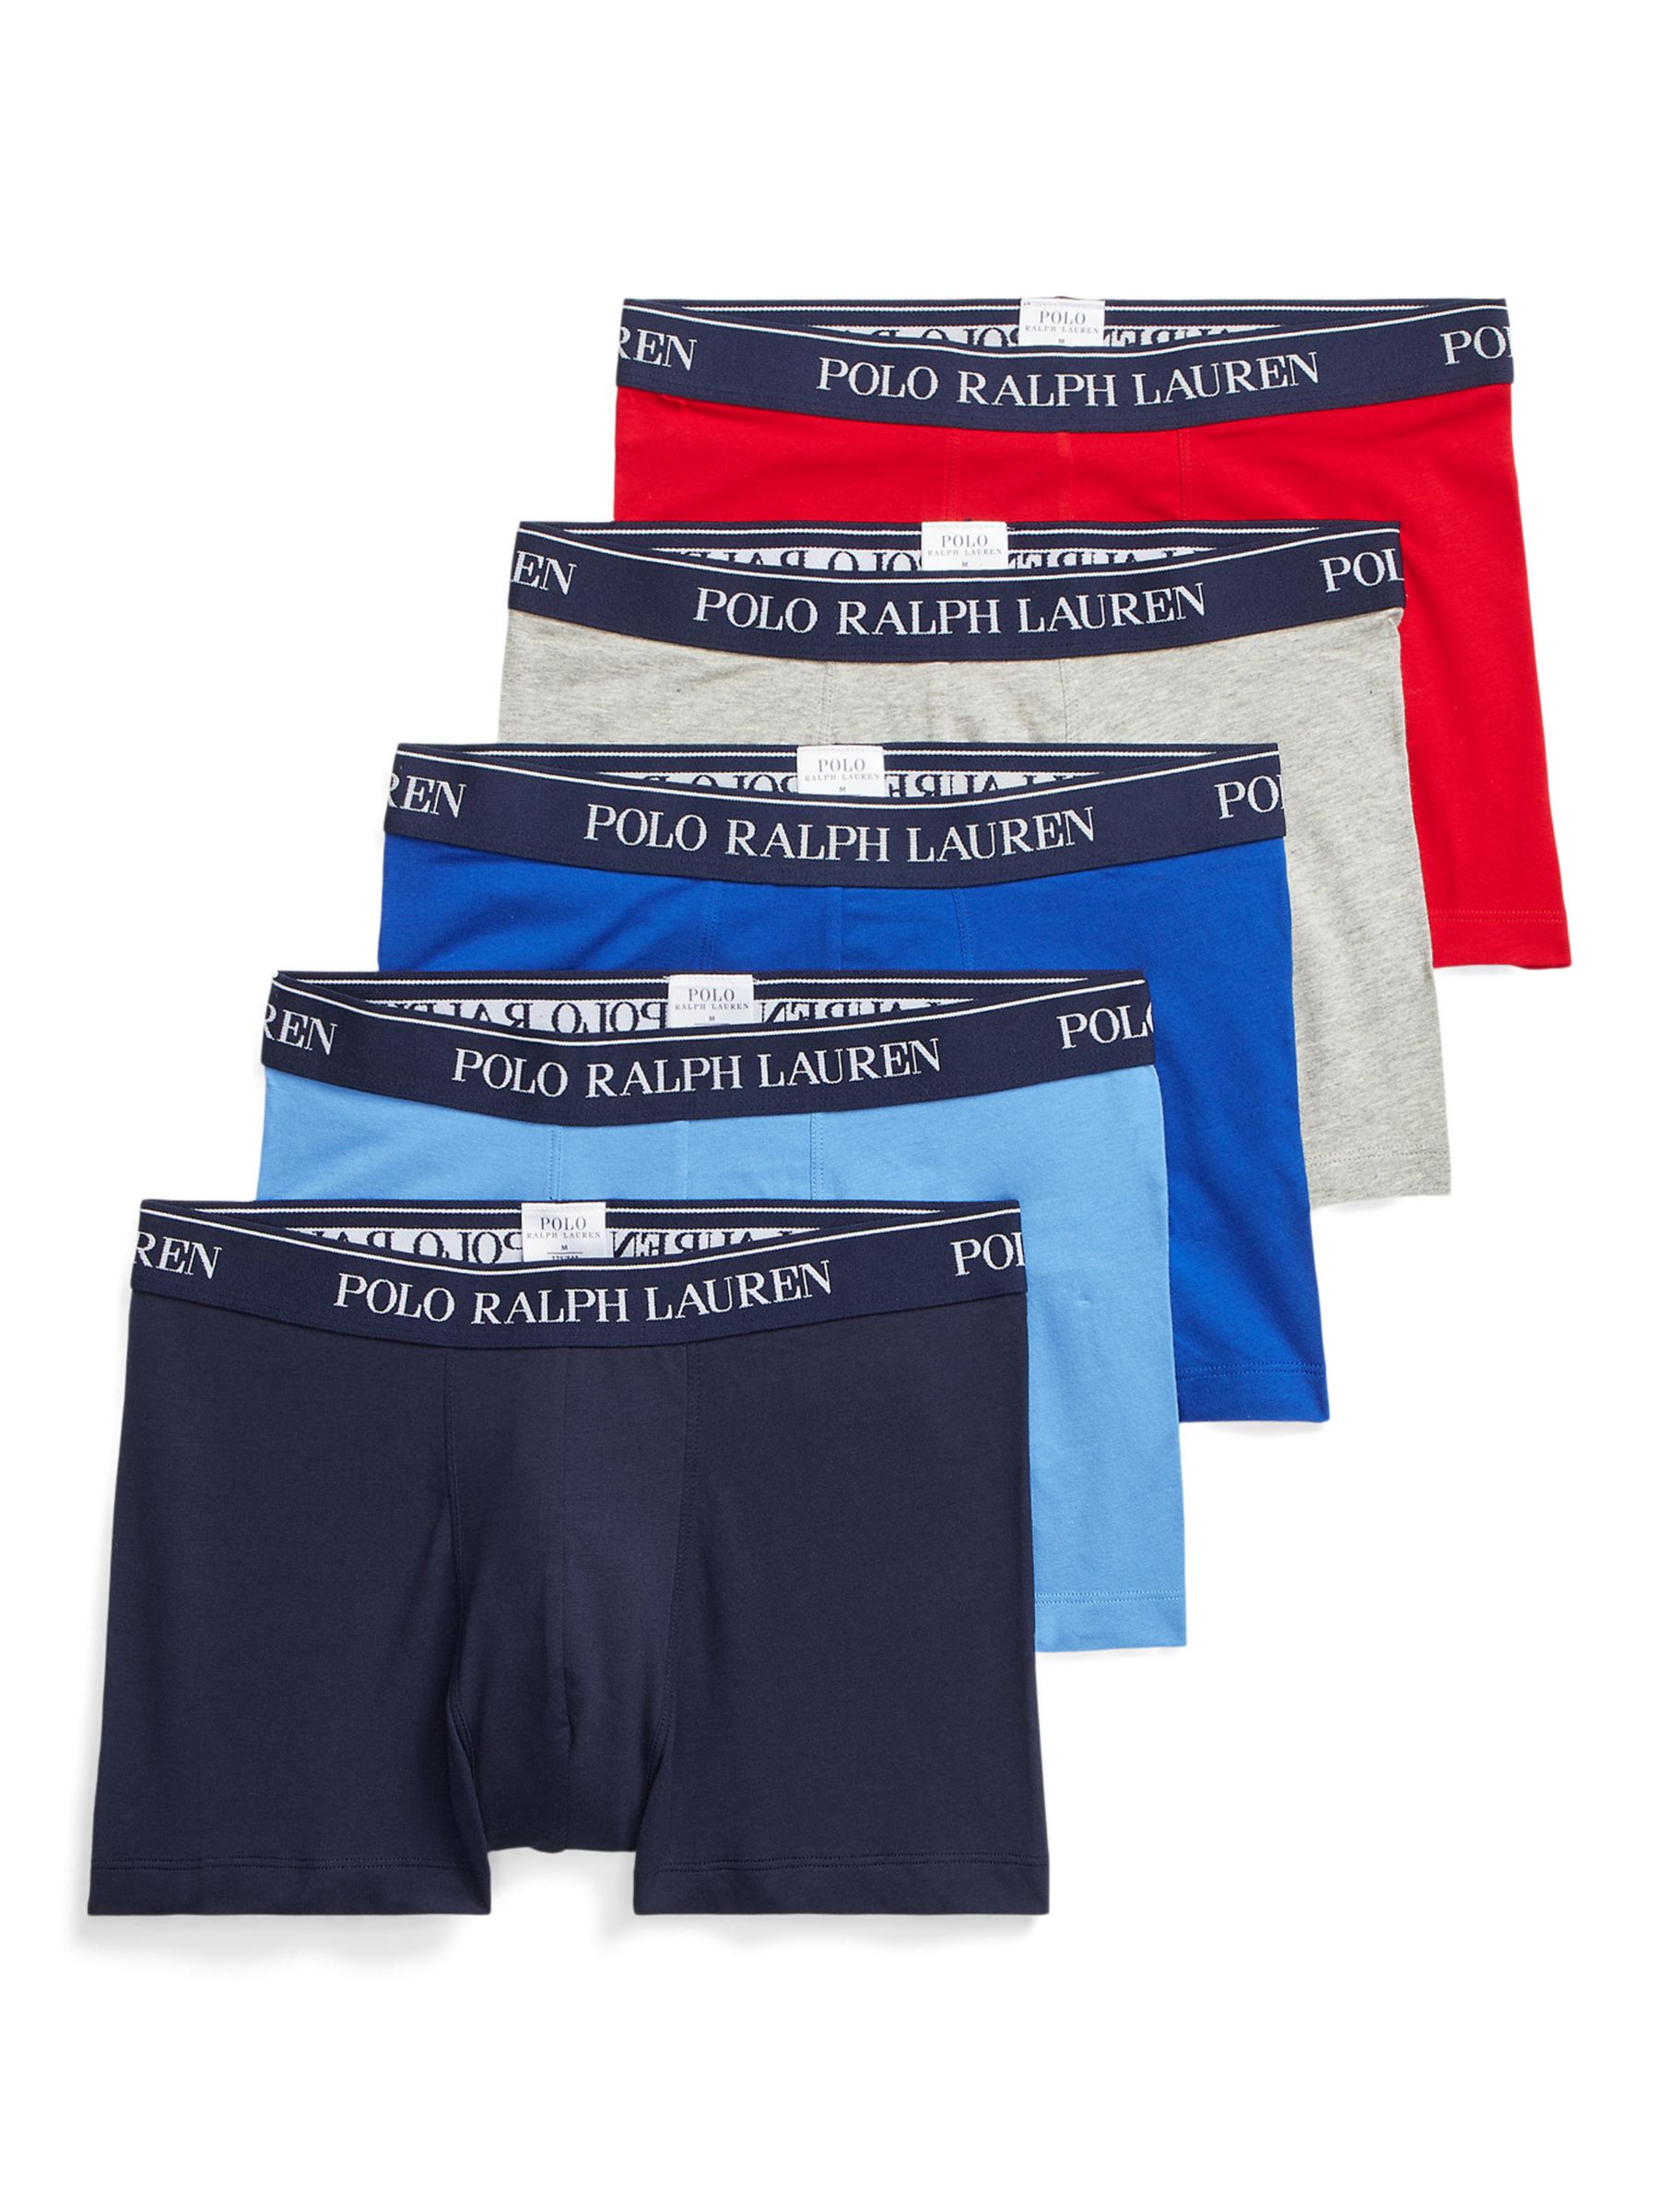 Ralph Lauren Men's Underwear